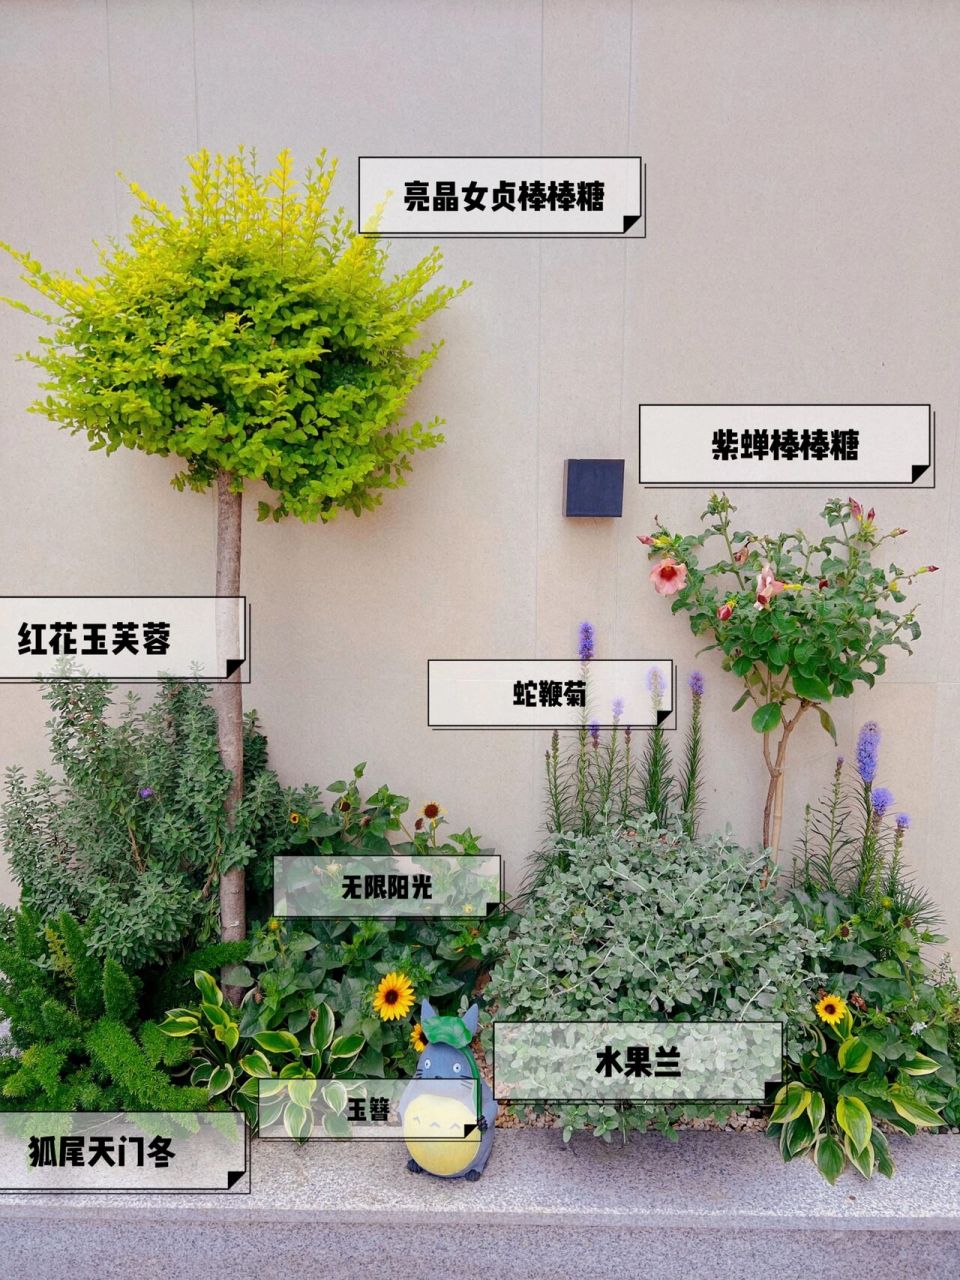 春季花境植物配置图片